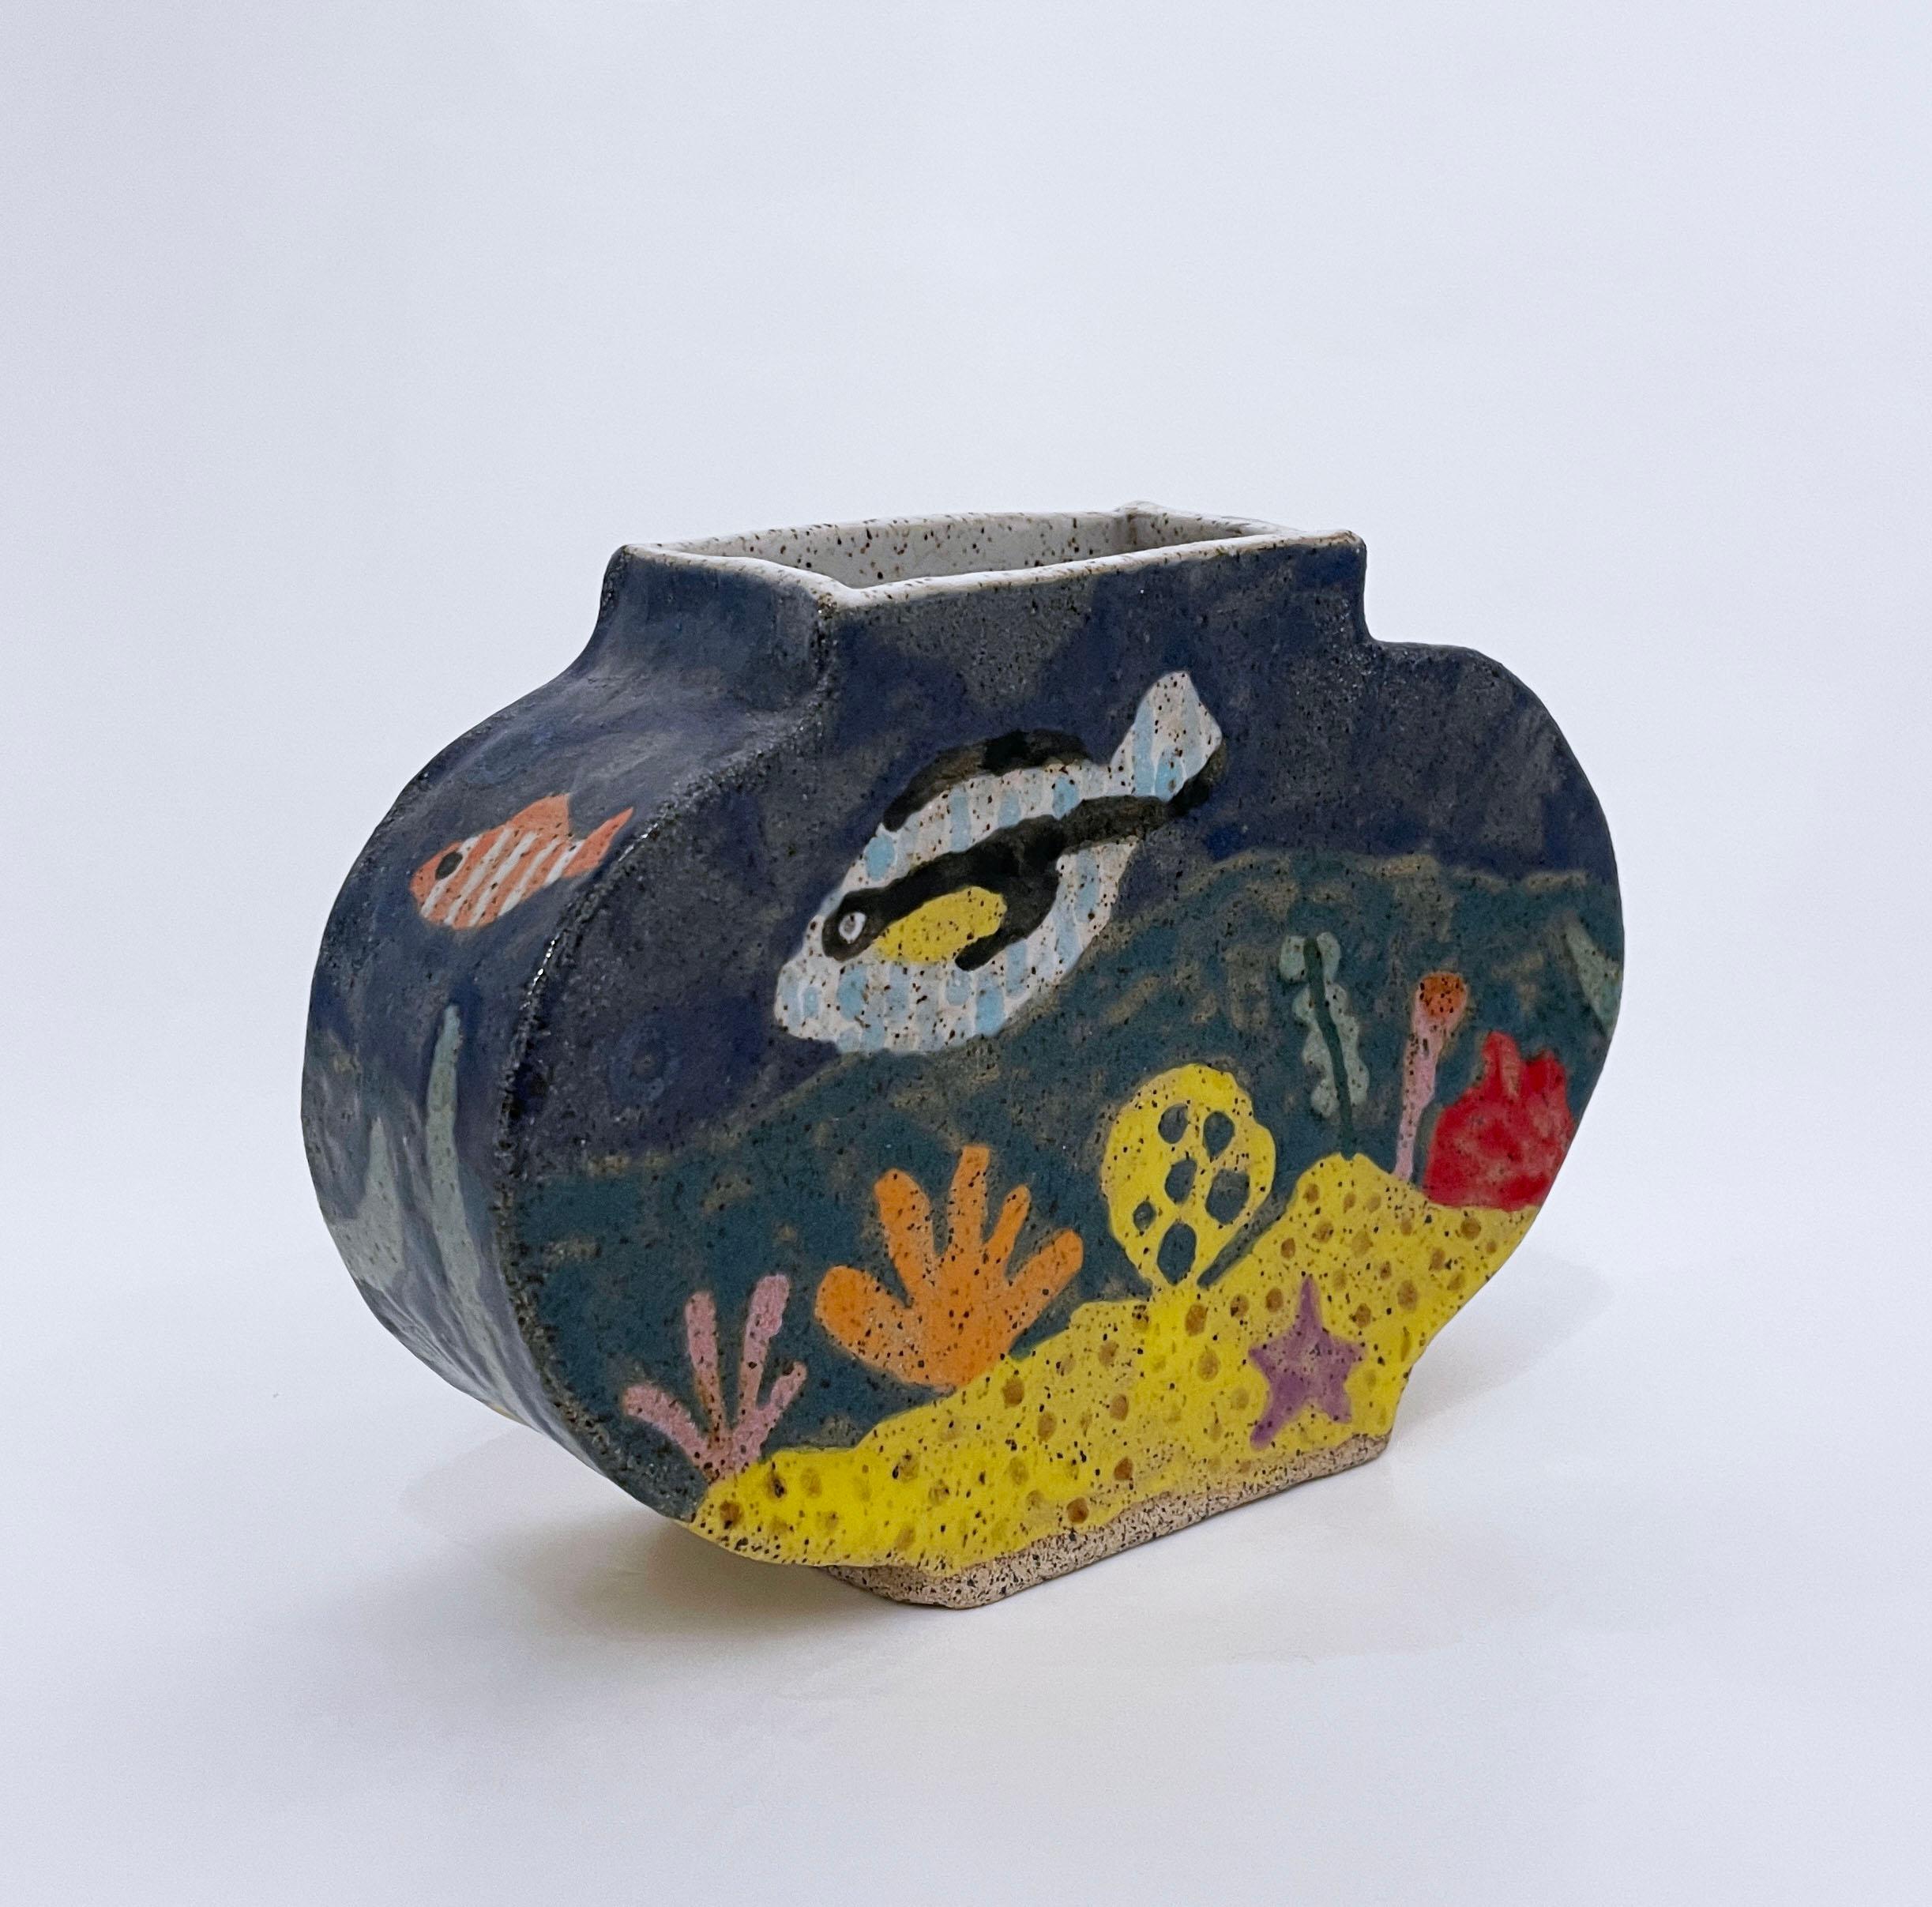 Max Vesuvius Budnick Figurative Sculpture - Fishbowl (2022), glazed ceramic, clay vase, aquarium, fish, blue, yellow, coral